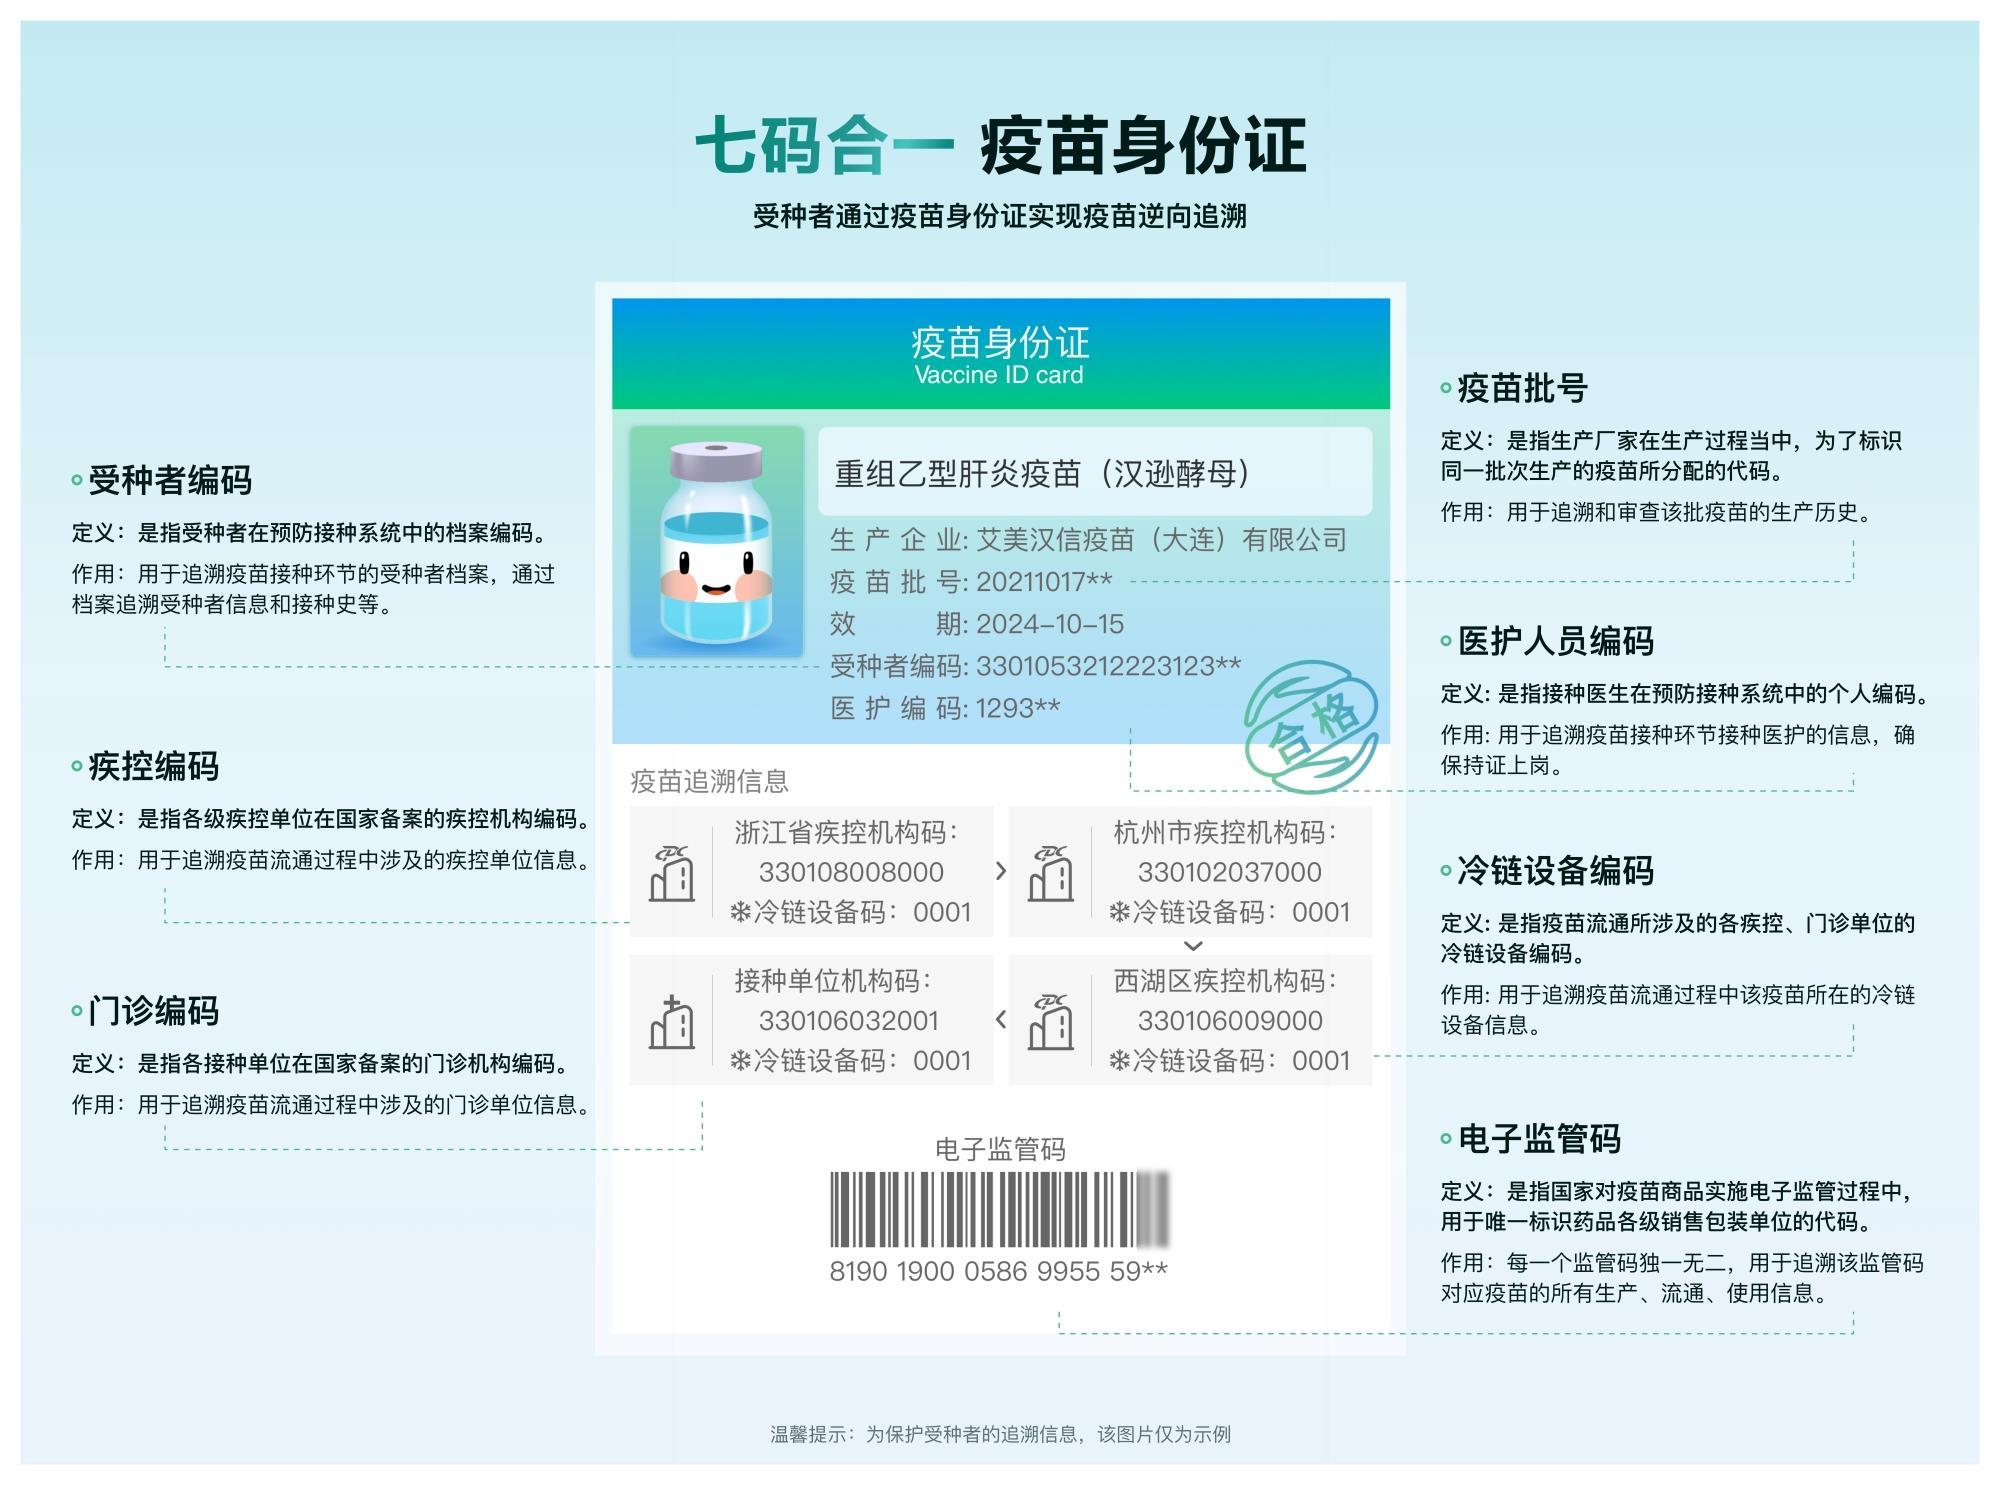 浙江杭州发布七码合一疫苗身份证接种次日手机可查